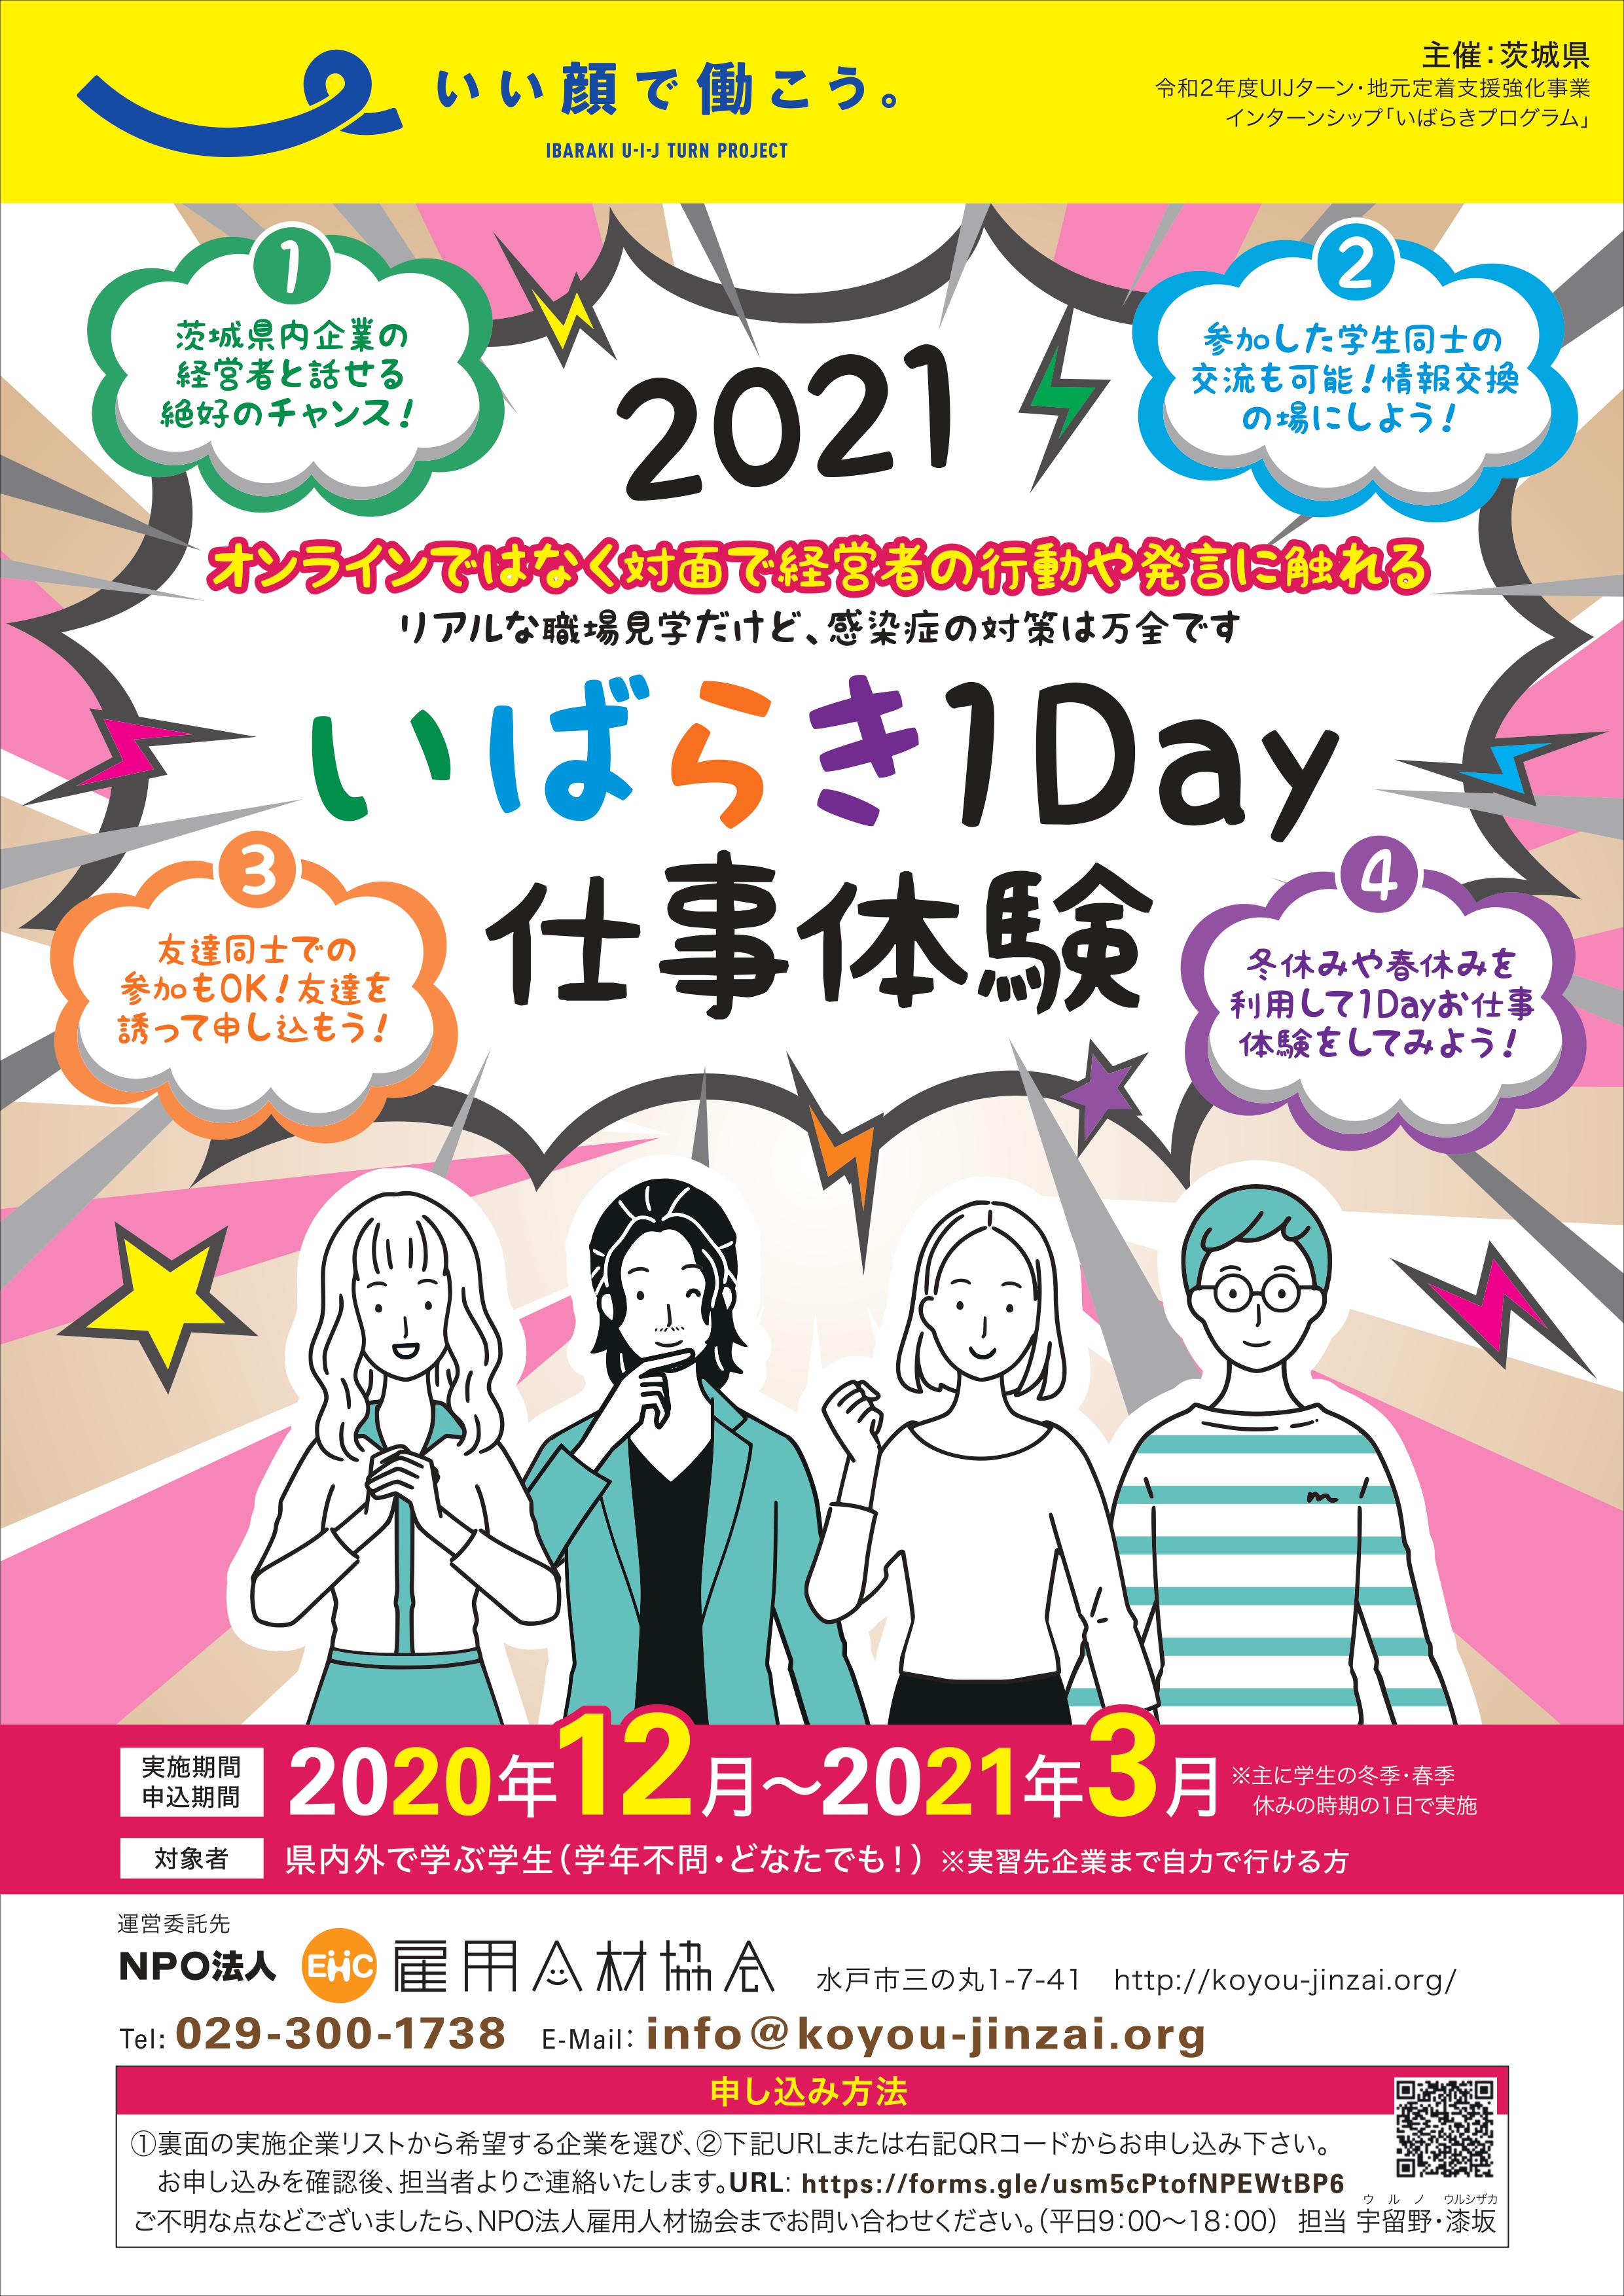 http://koyou-jinzai.org/res/images/2020-2021-flyer.jpg